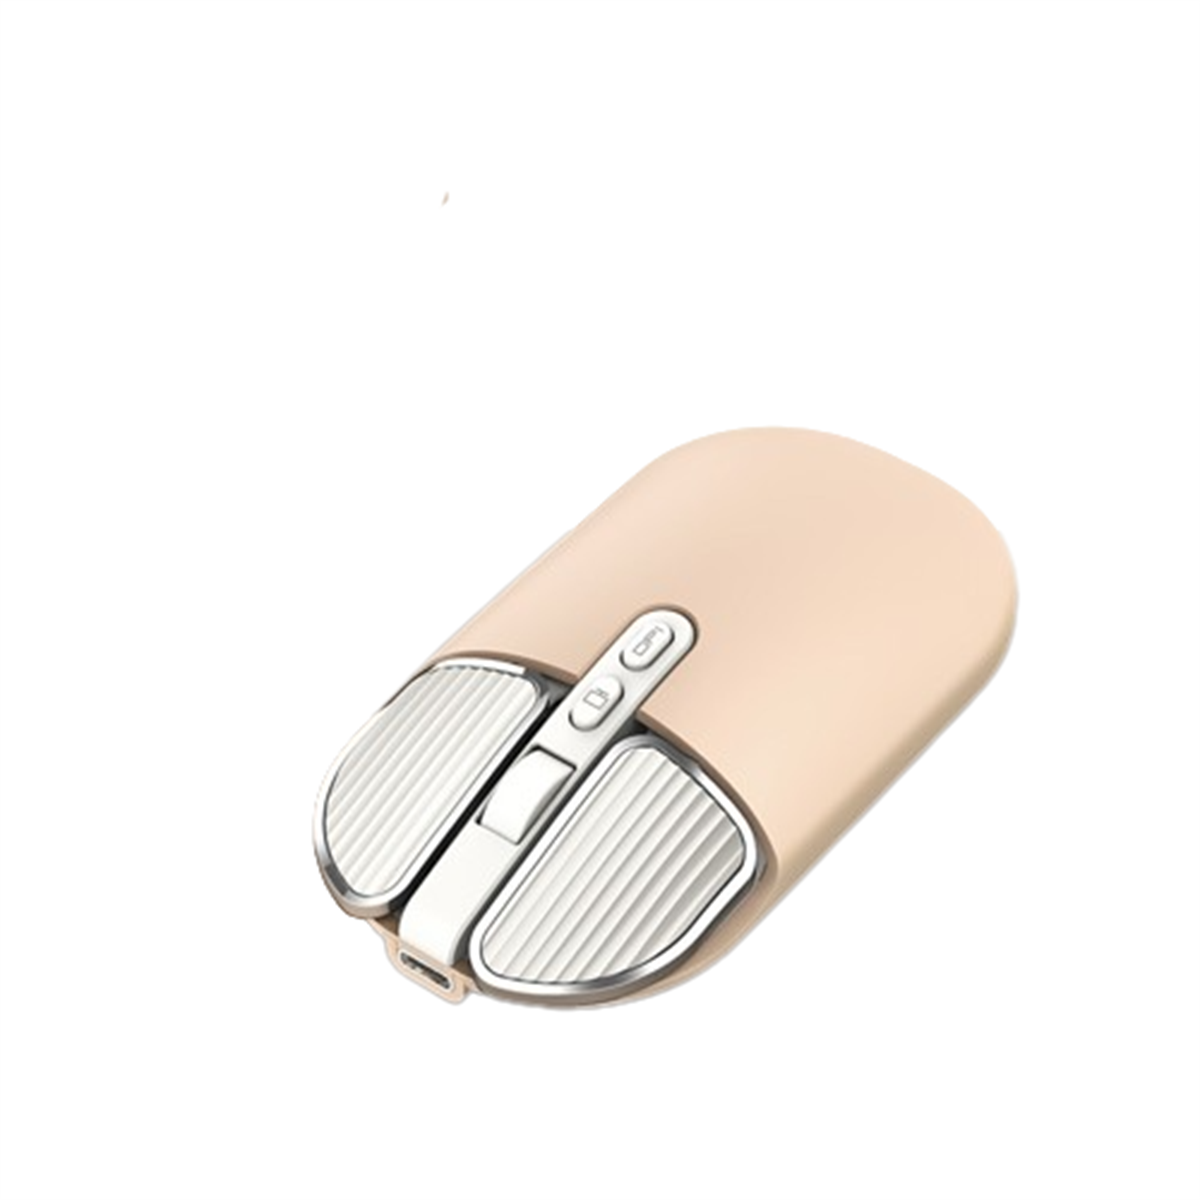 SYNTEK M203 - präzise Mouse Positionierung Wireless Dual-Mode-Verbindung, Maus, weiß